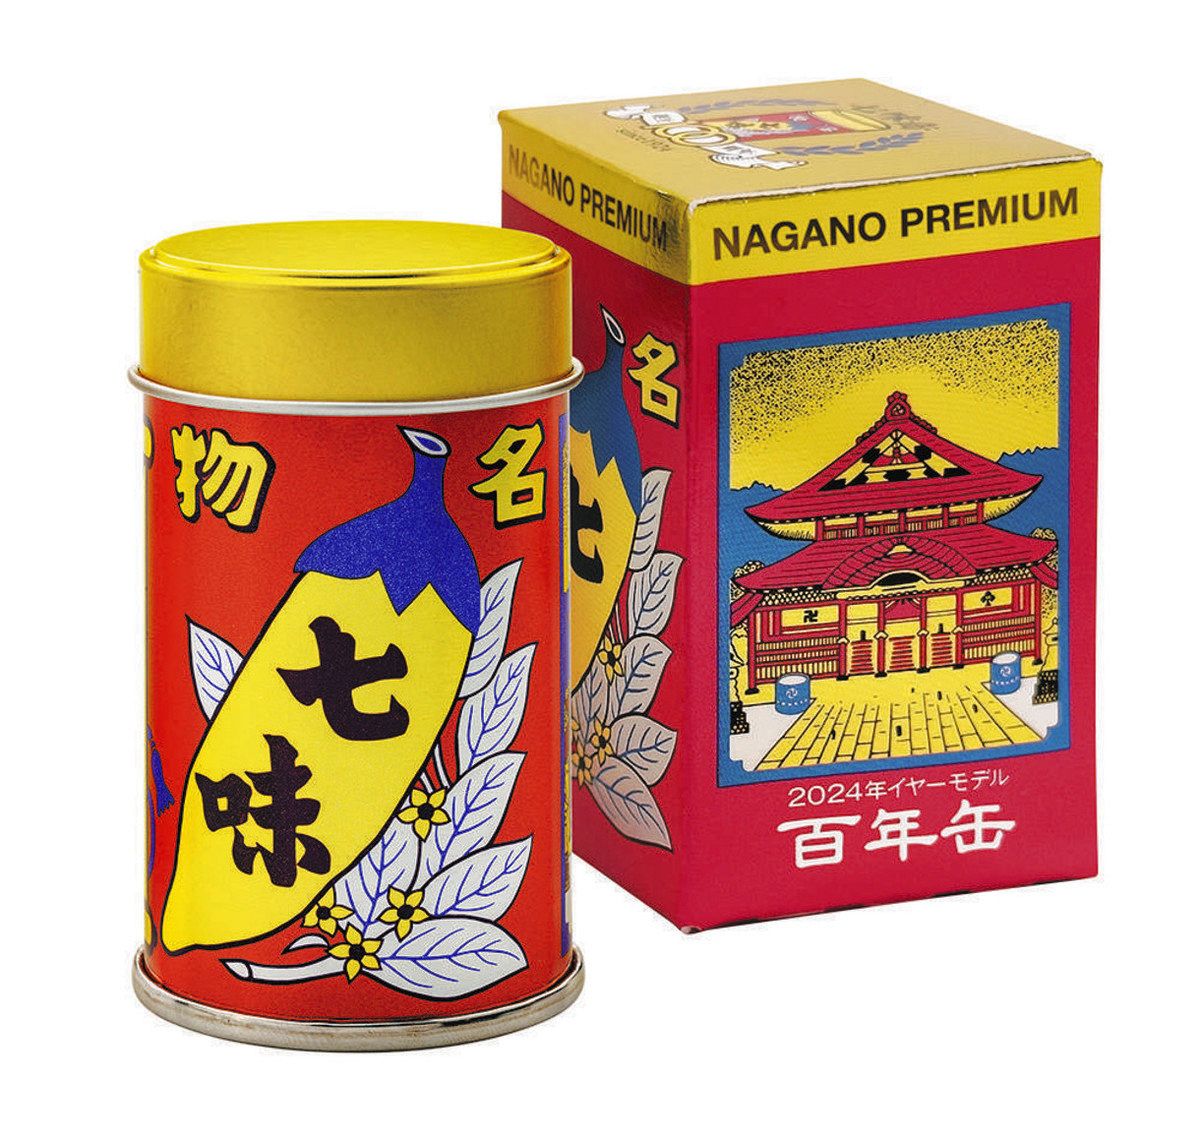 八幡屋礒五郎が100年前の缶デザイン復刻 元日発売、ミニカー「くるま缶 